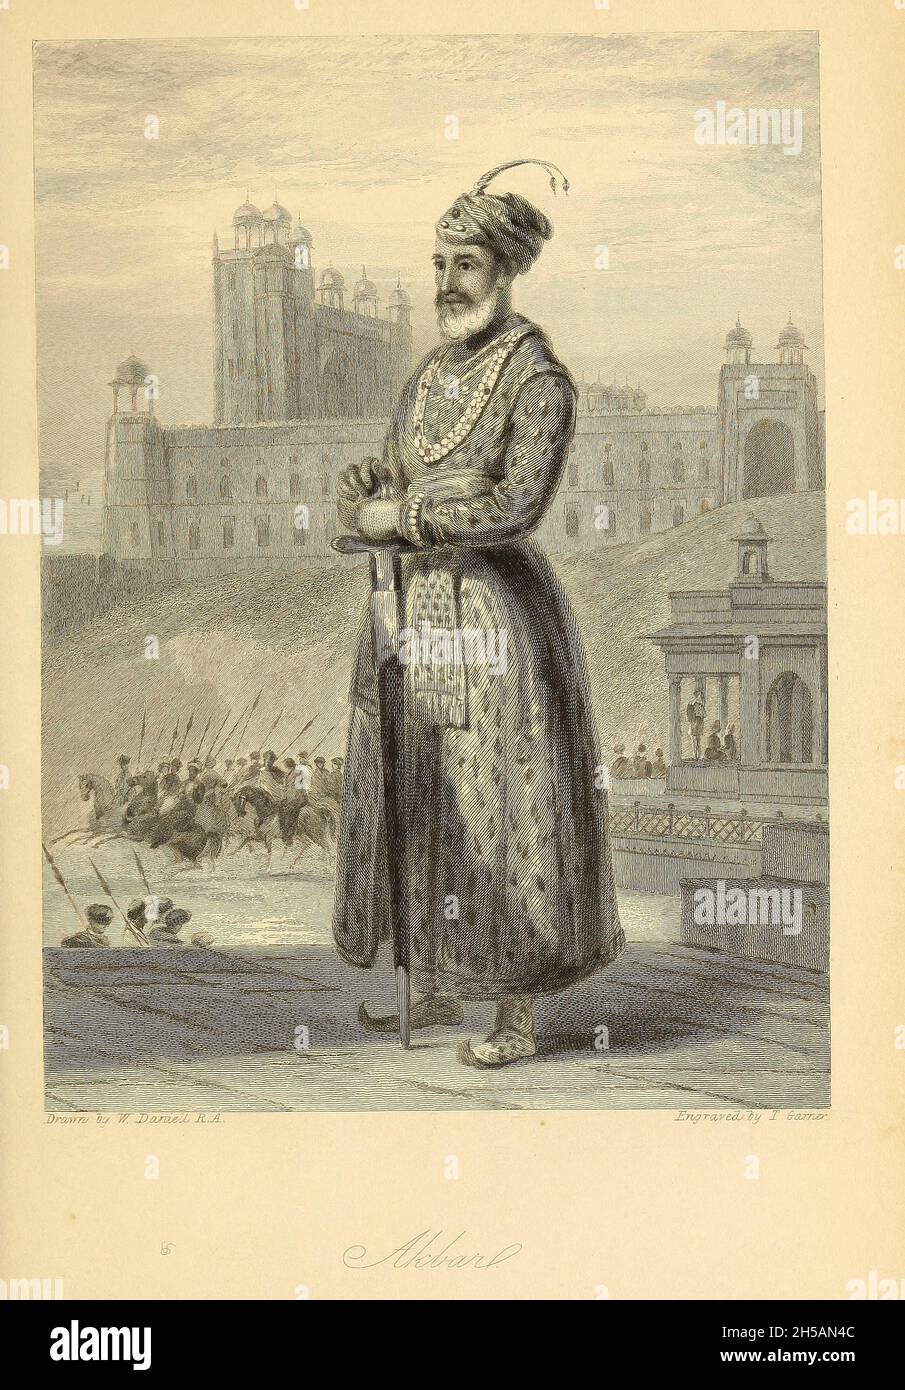 Abu'l-Fath Jalal-ud-din Muhammad Akbar (25 octobre 1542 – 27 octobre 1605), connu sous le nom de Akbar le Grand (Akbar-i-azam), et aussi comme Akbar, j'ai été le troisième empereur moghol, qui a régné de 1556 à 1605.Akbar a succédé à son père, Humayun, sous un régent, Bairam Khan, qui a aidé le jeune empereur à étendre et à consolider les domaines de Mughal en Inde.D'après le livre « The Oriental Annual, or, Scenes in India » du rév. Hobart Caunter publié par Edward Bull, Londres 1838 gravures de dessins de William Daniell Banque D'Images